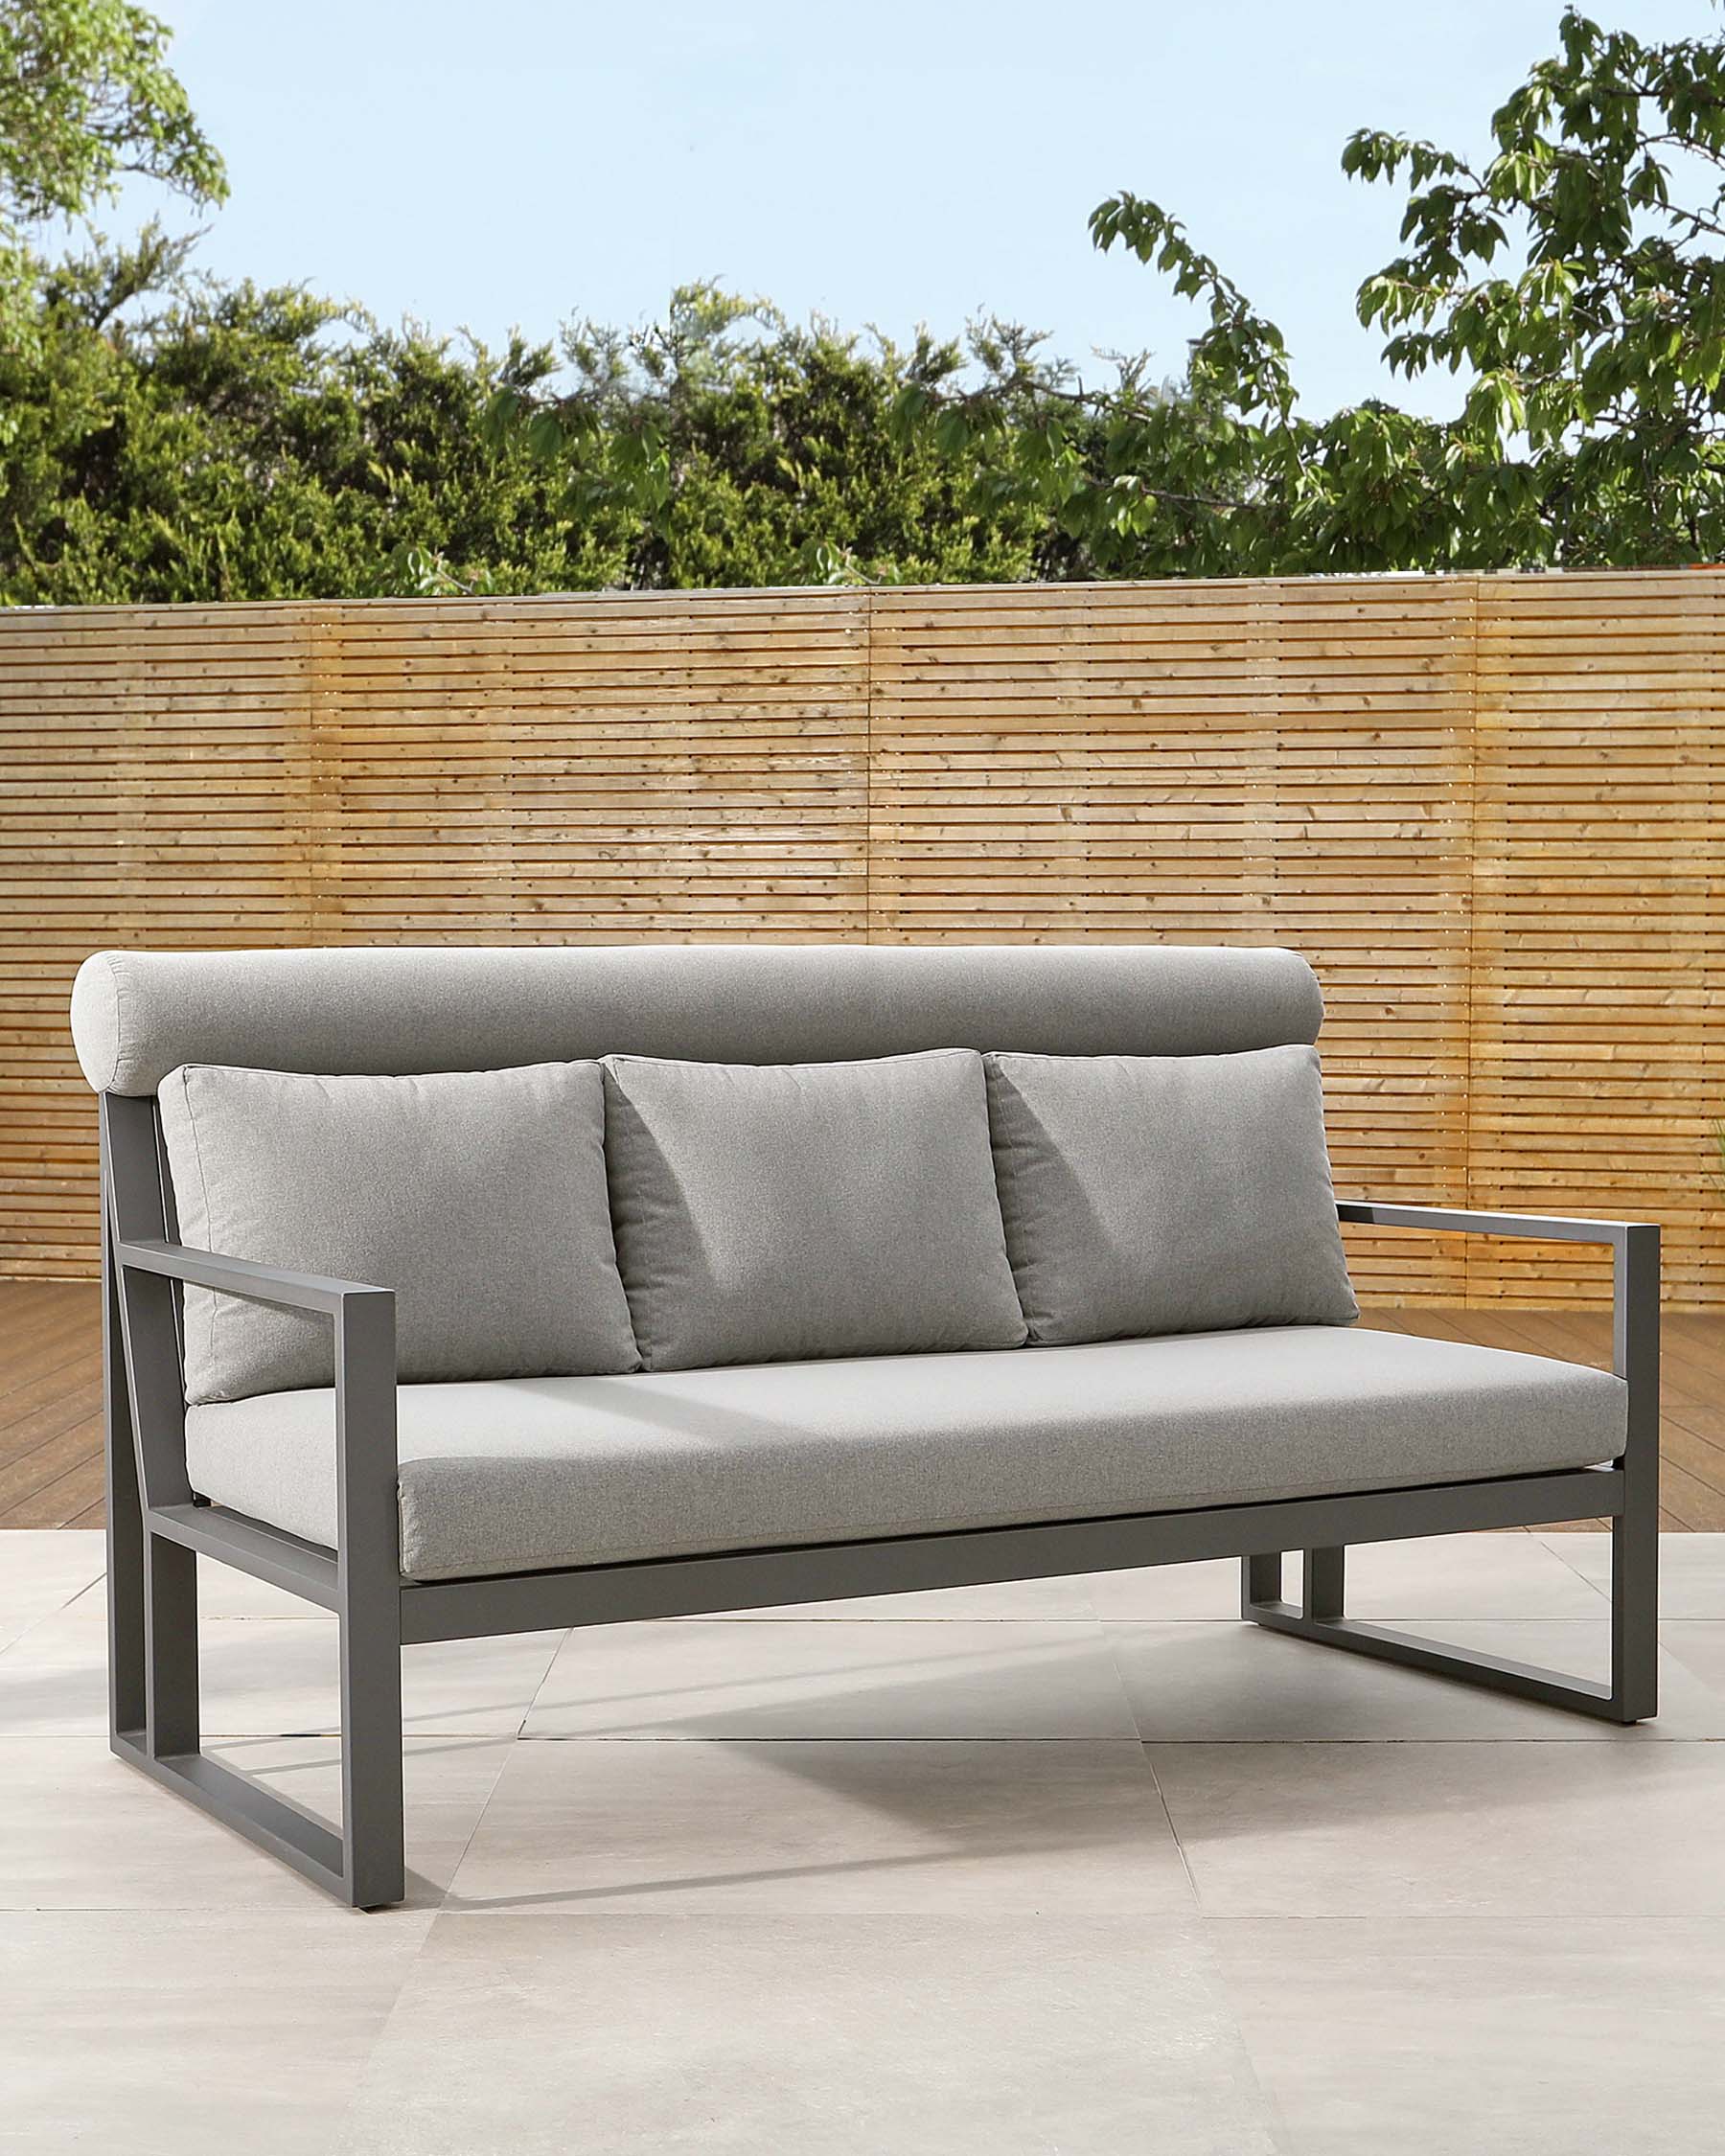 verano 3 seater garden sofa bench mid grey